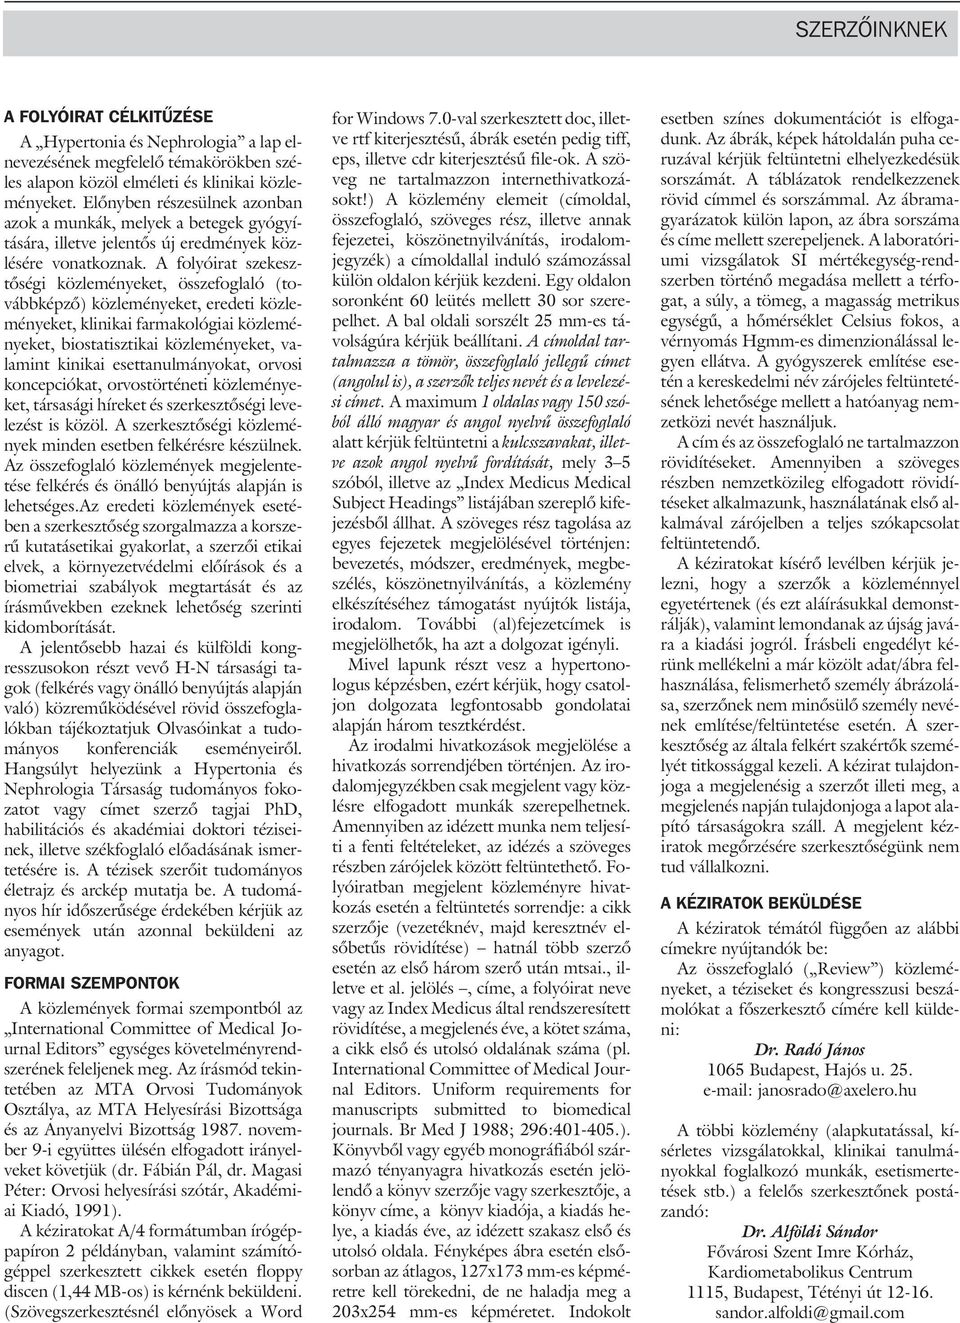 A folyóirat szekesztõségi közleményeket, összefoglaló (továbbképzõ) közleményeket, eredeti közleményeket, klinikai farmakológiai közleményeket, biostatisztikai közleményeket, valamint kinikai